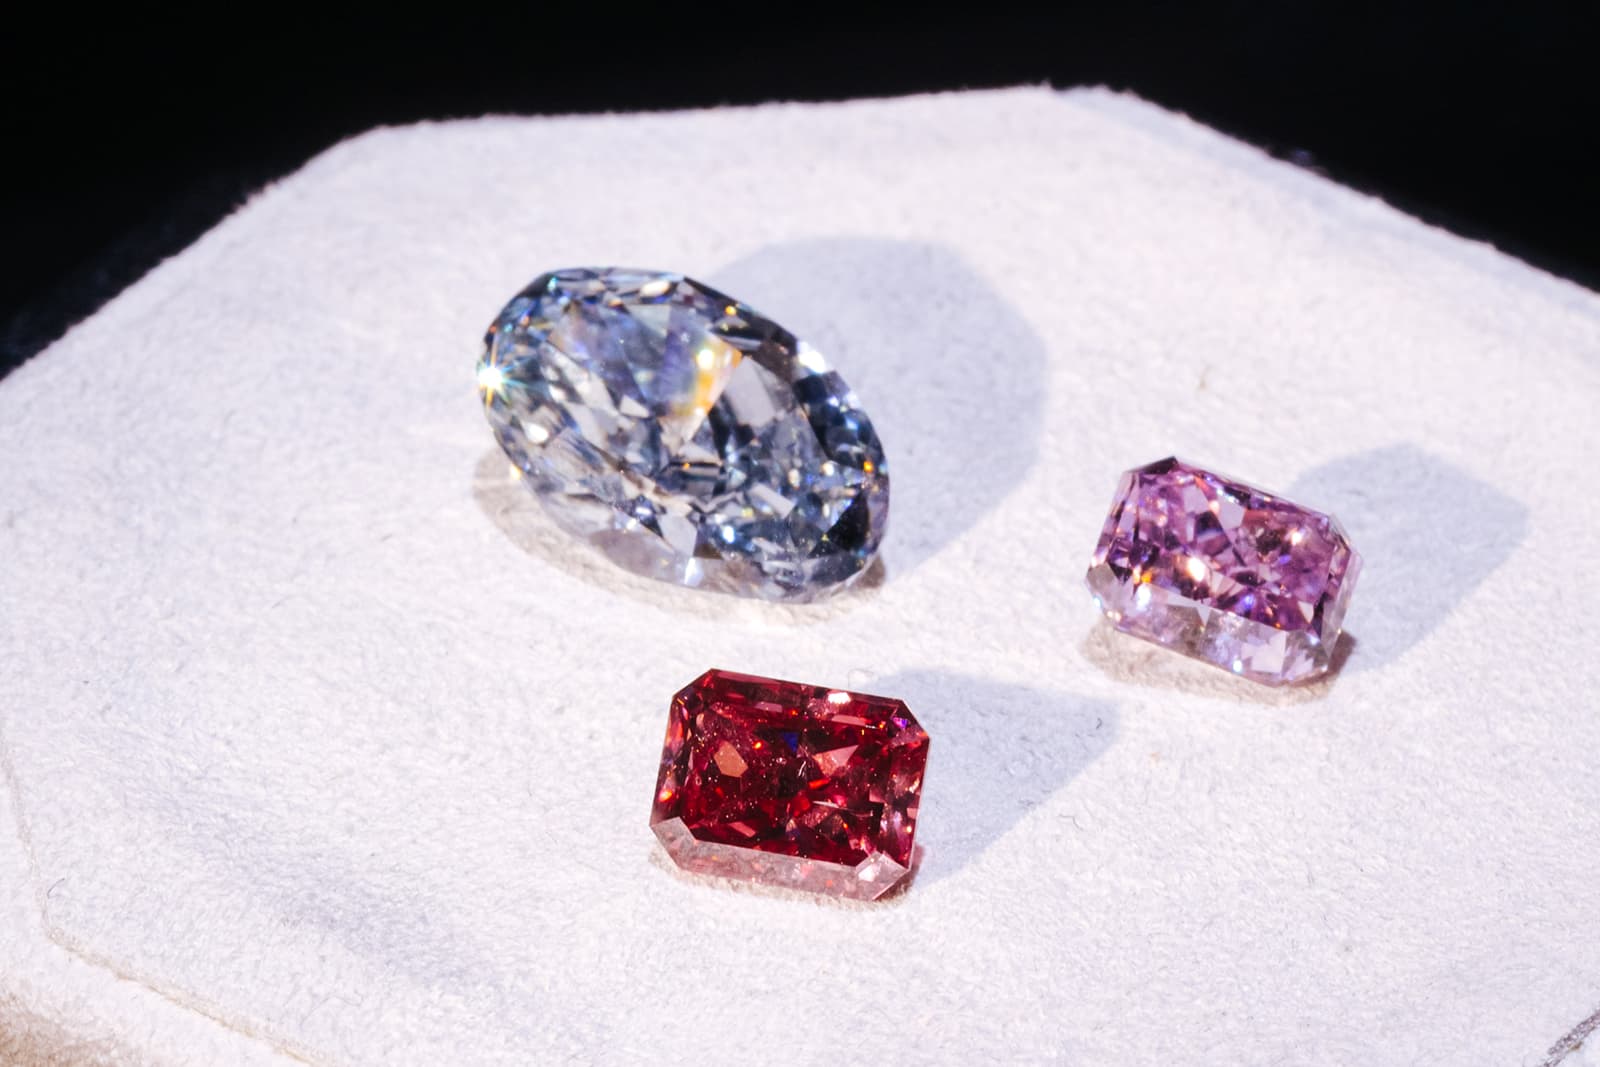 Подборка незакрепленных бриллиантов и драгоценных камней Tiffany & Co., представленных на выставке Dubai Expo 2020 